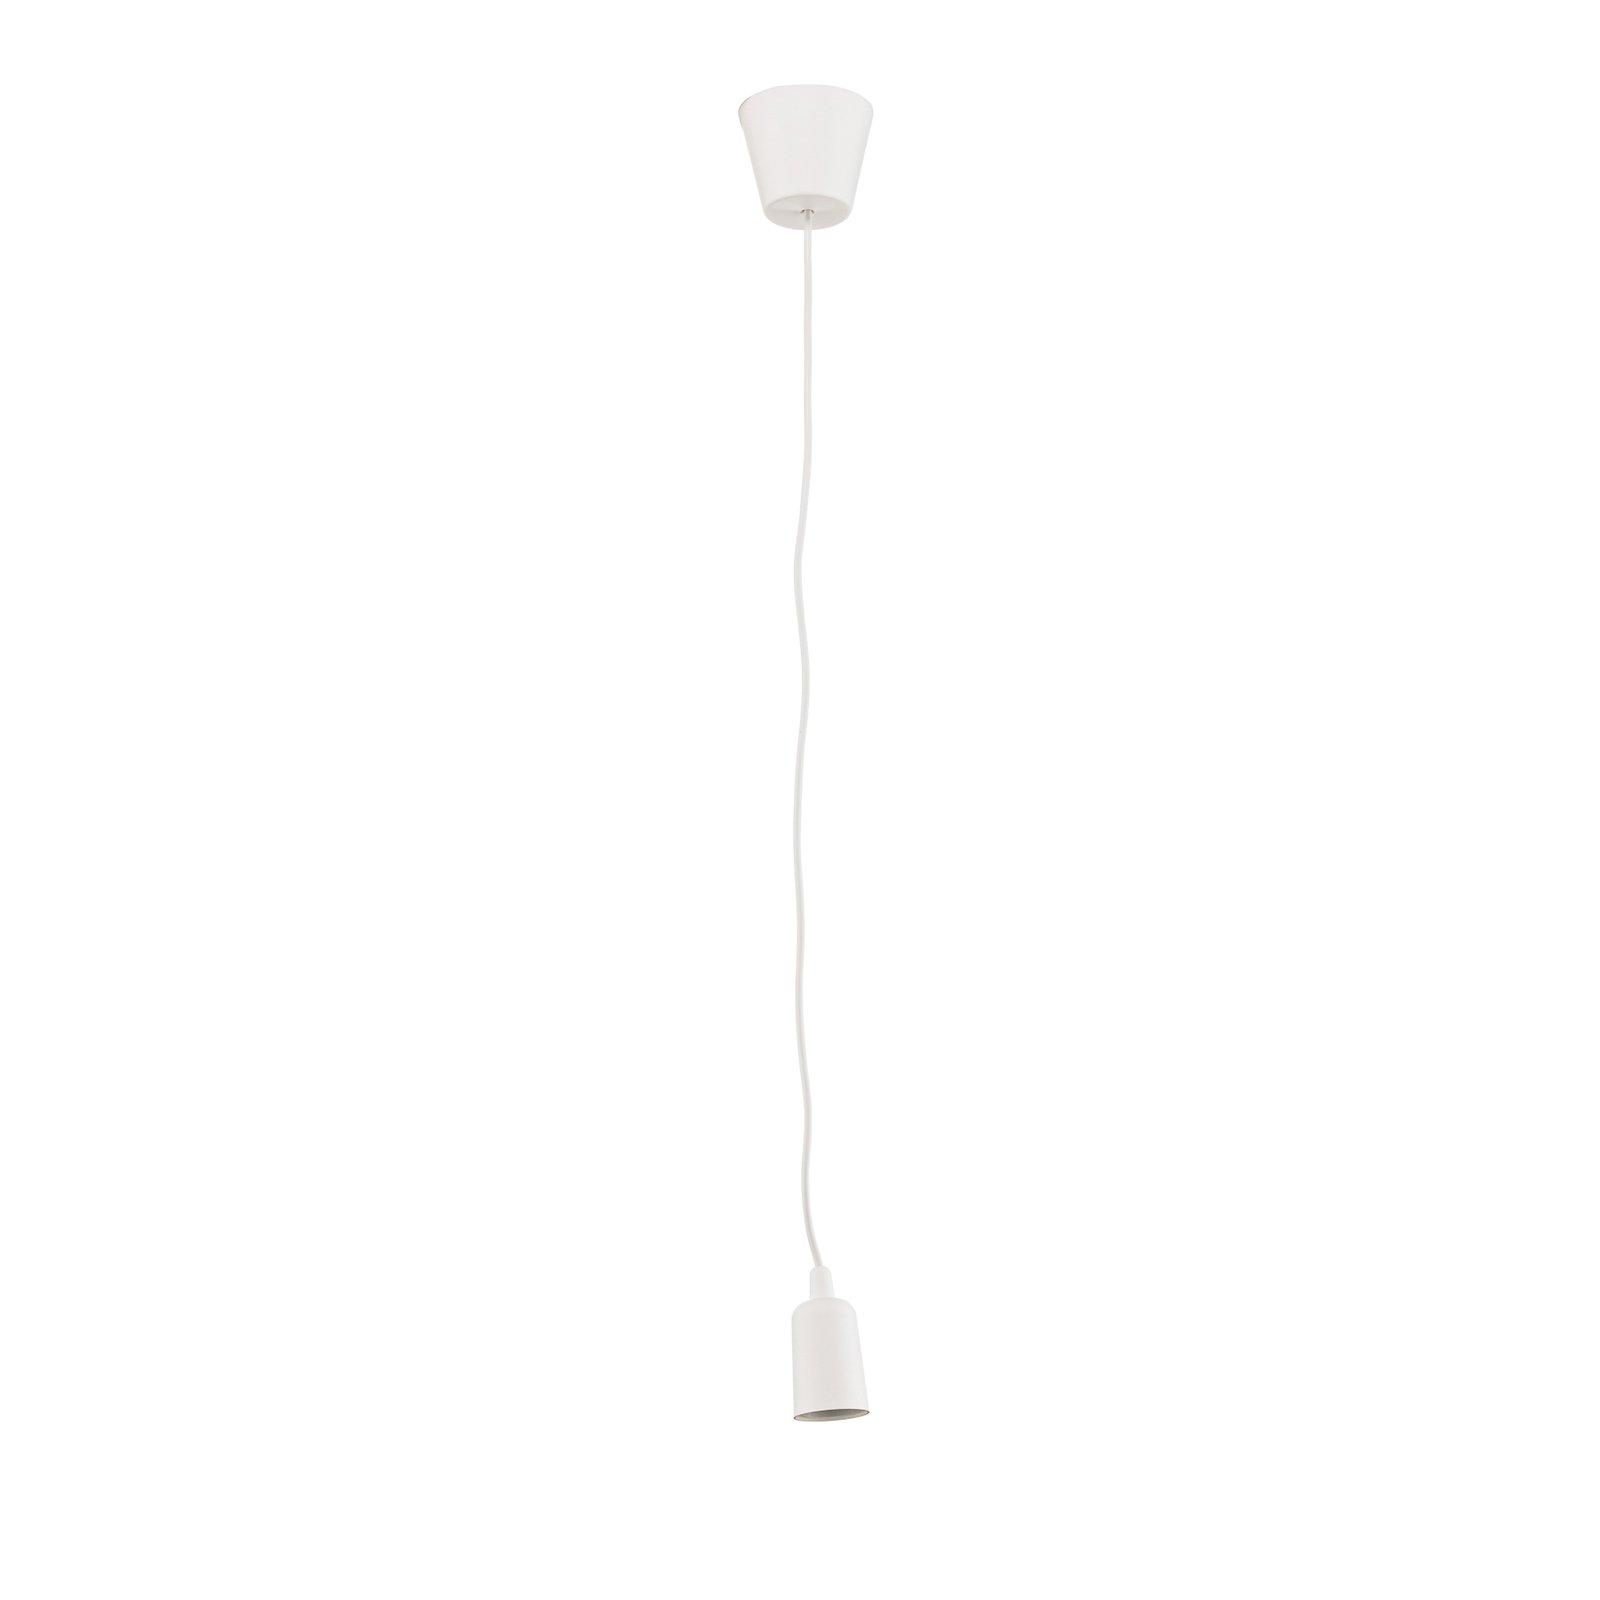 Brasil hanging light, white, one-bulb